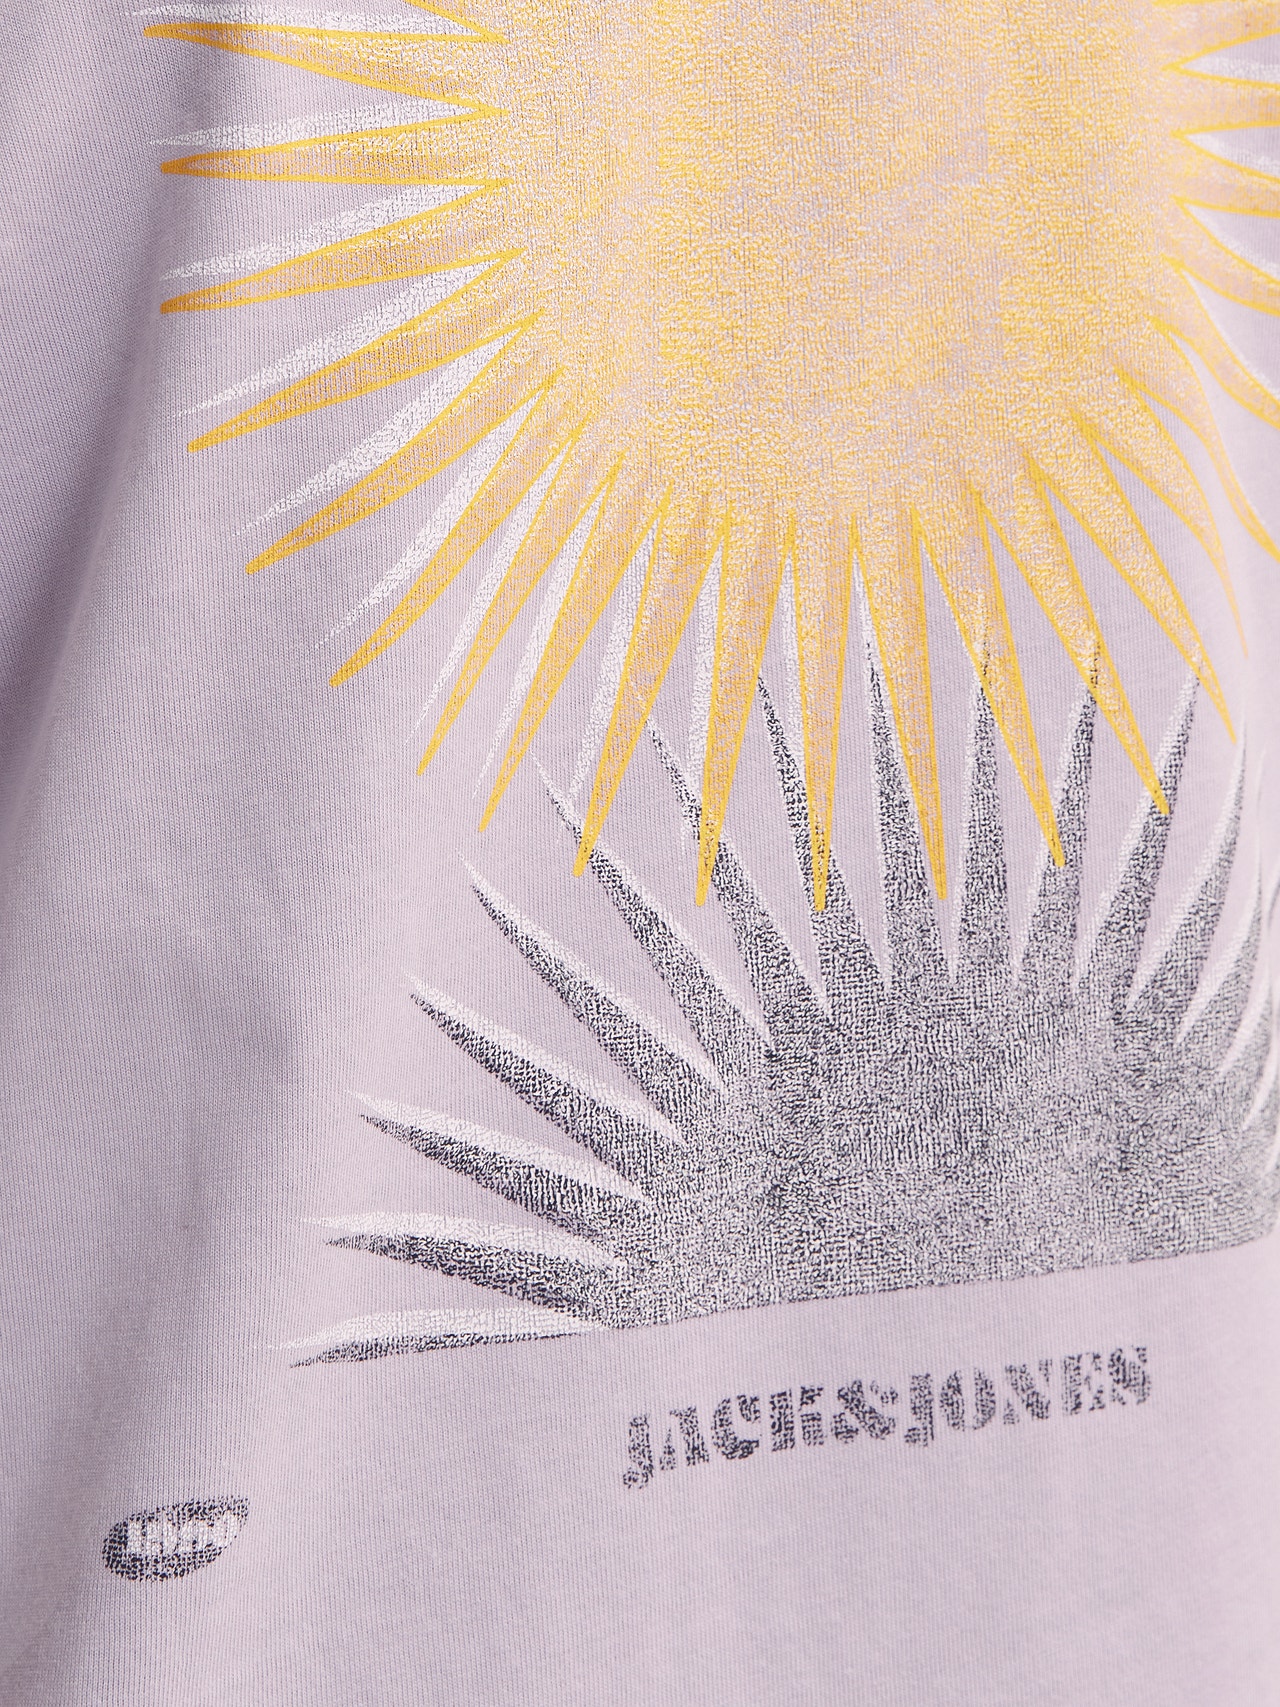 Jack & Jones T-shirt Estampar Para meninos -Lavender Frost - 12257637